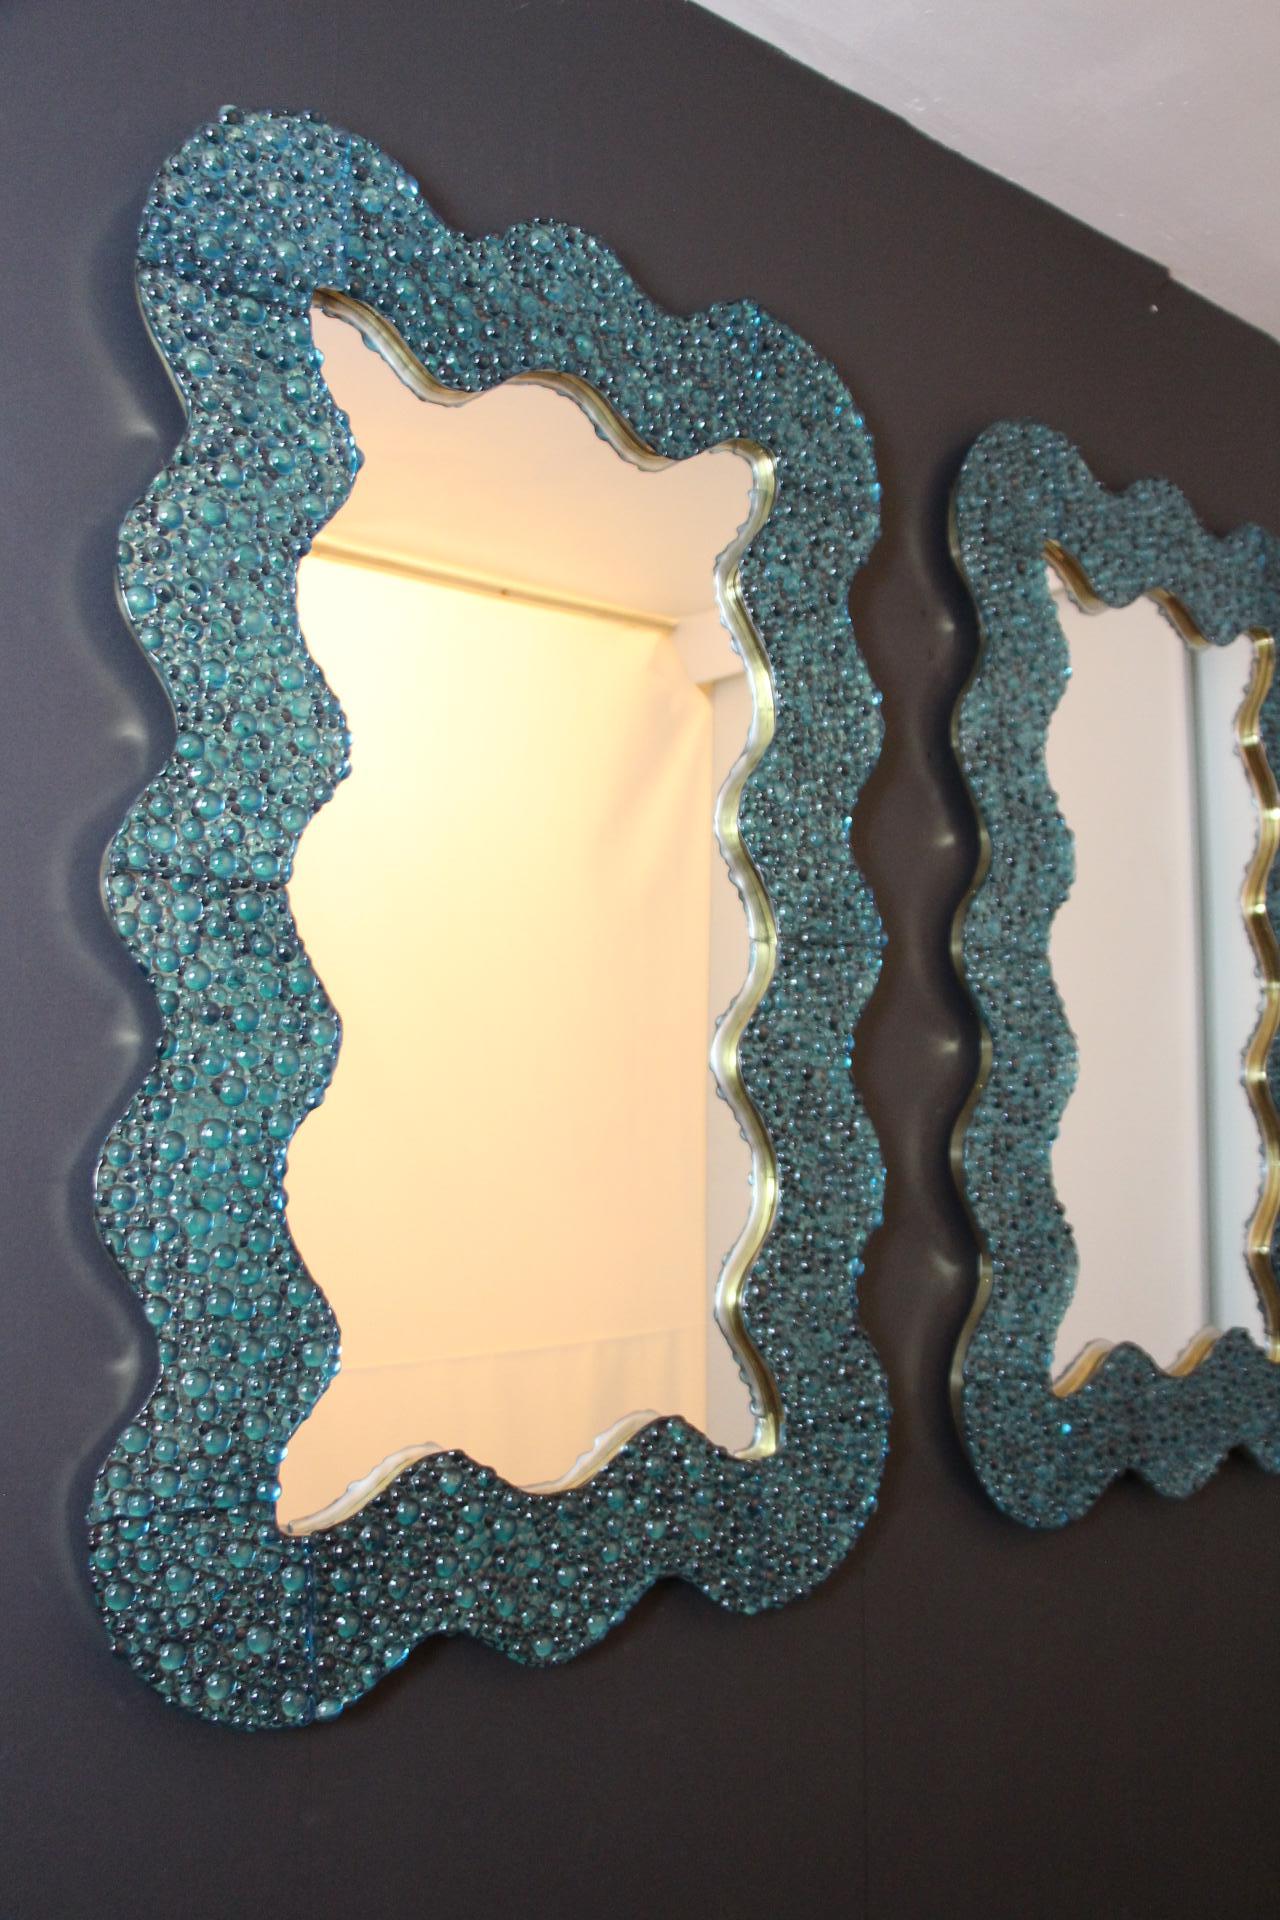 Ces miroirs bleus en verre de Murano sont absolument époustouflants. Tout d'abord, sa forme ondulée est très inhabituelle et procure une sensation très douce et inhabituelle. Ensuite, la texture du verre est vraiment spectaculaire, on dirait des